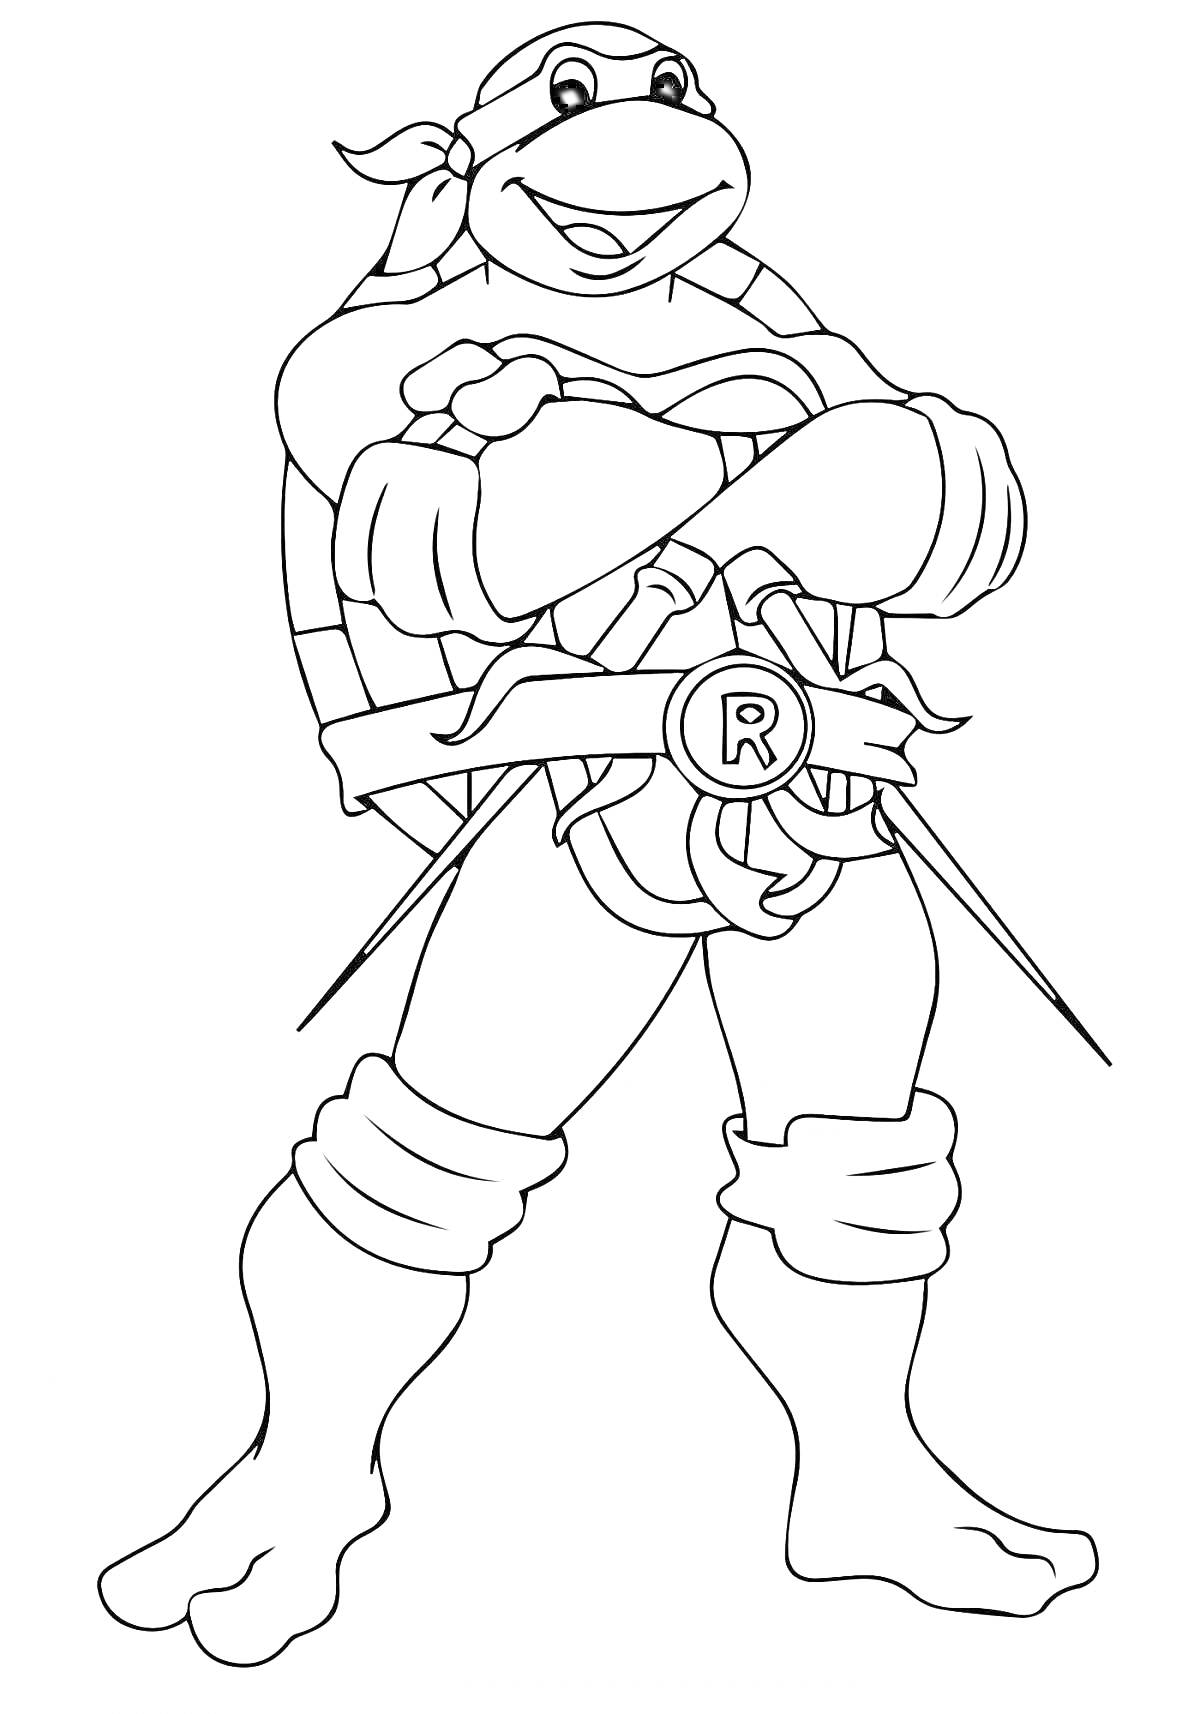 Раскраска Черепашка ниндзя с повязкой на глазах и оружием сай в руках